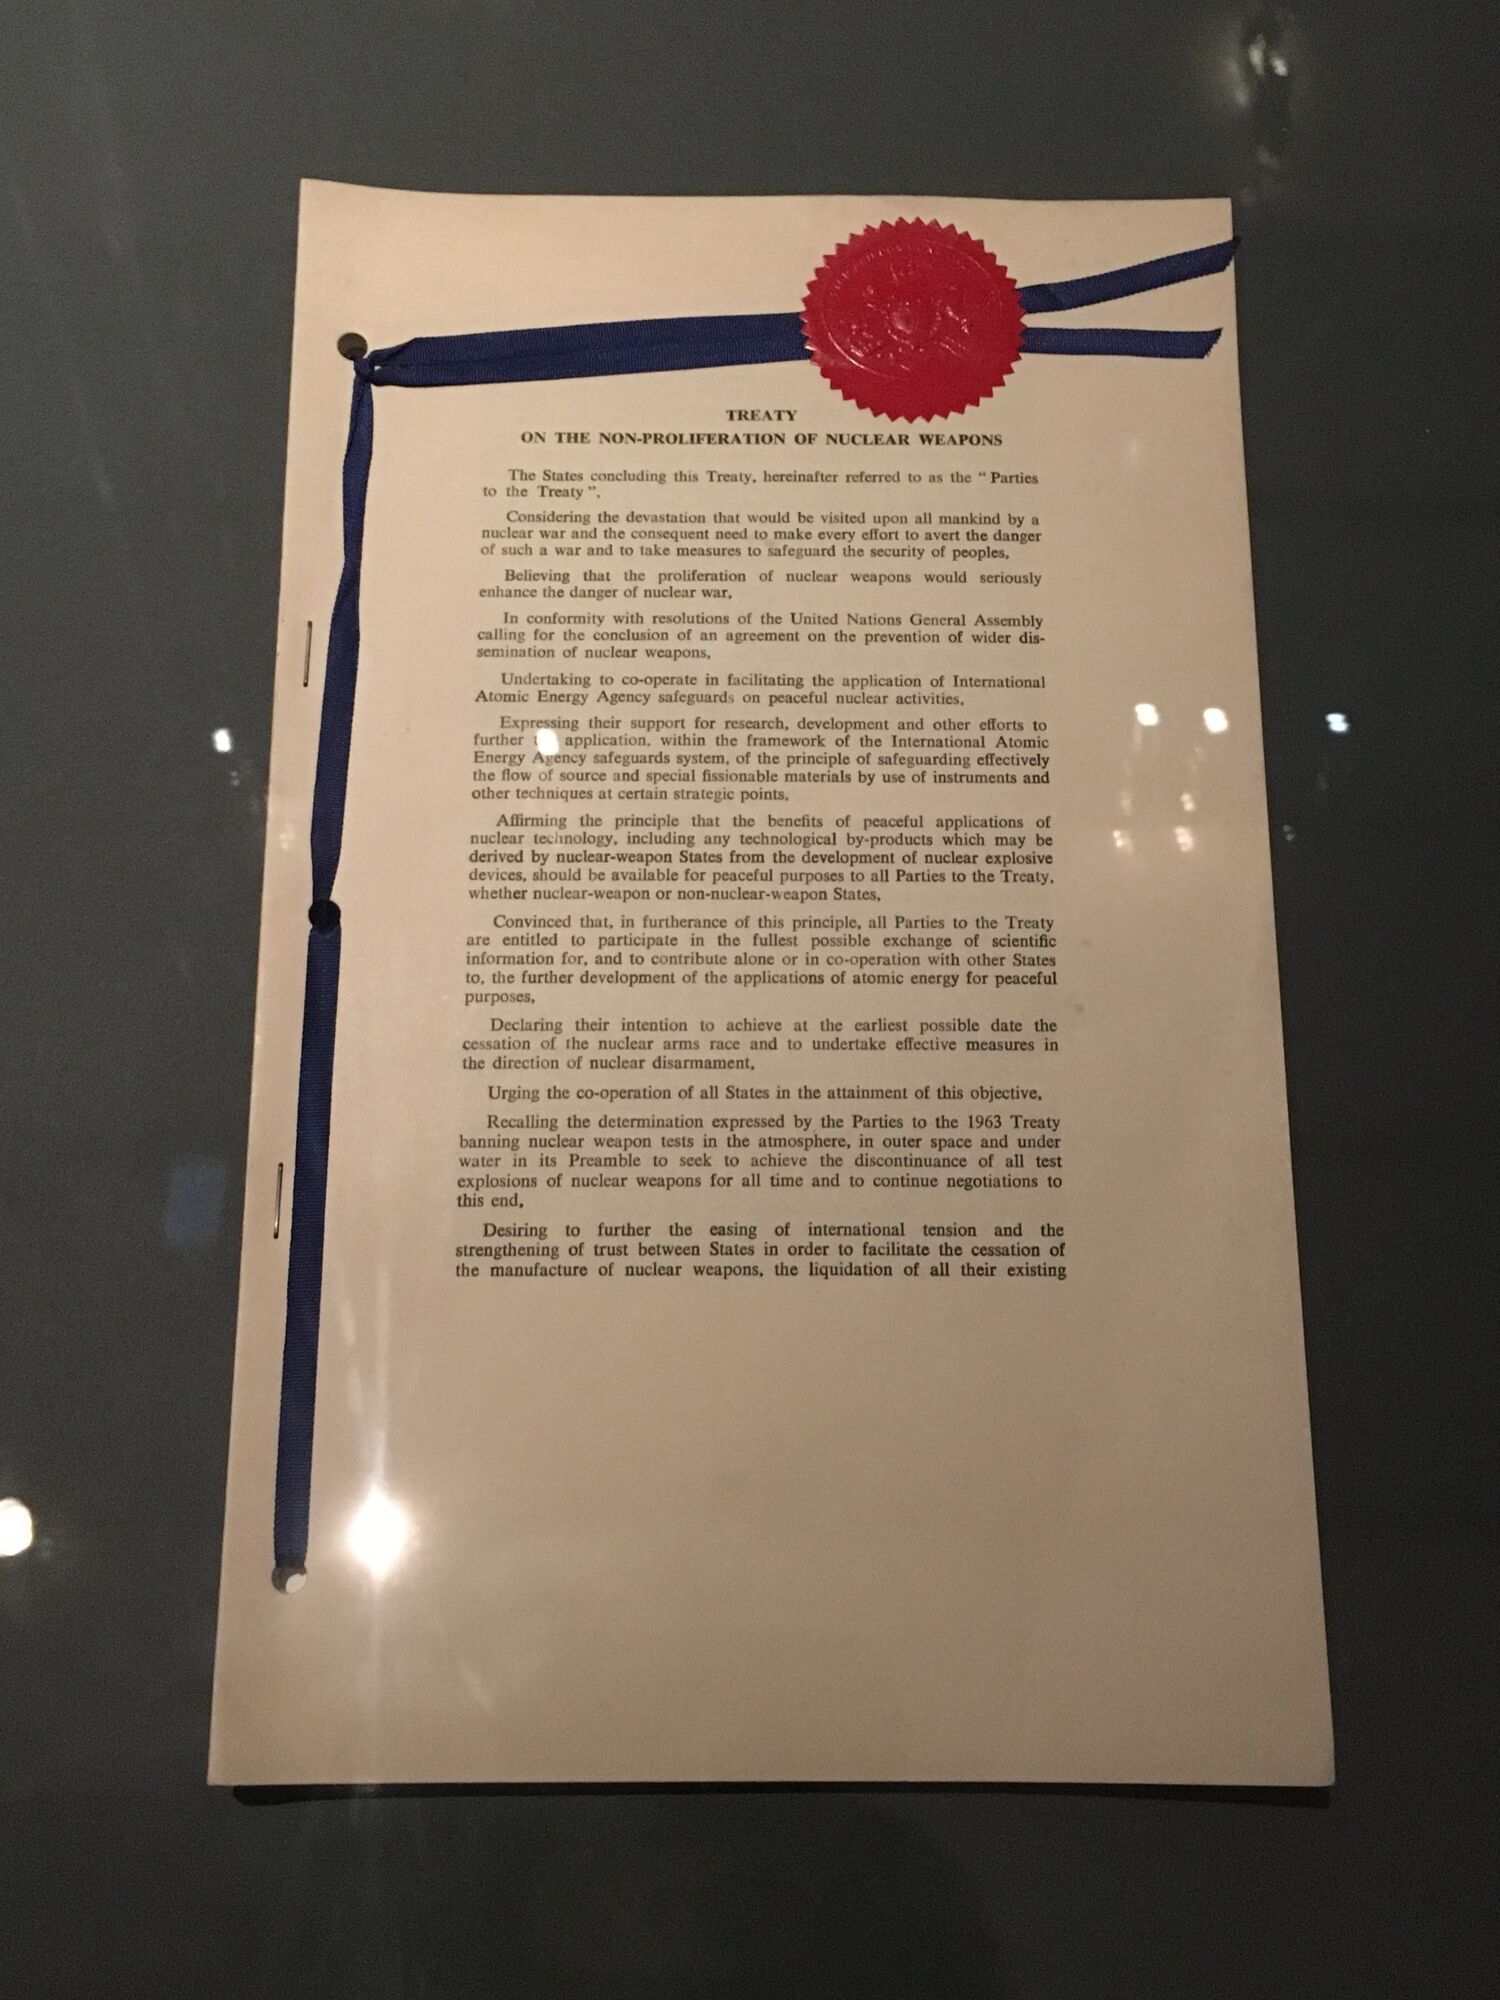 Договор о нераспространении ядерного оружия. Лондон, Москва, Вашингтон, 1 июля 1968 года